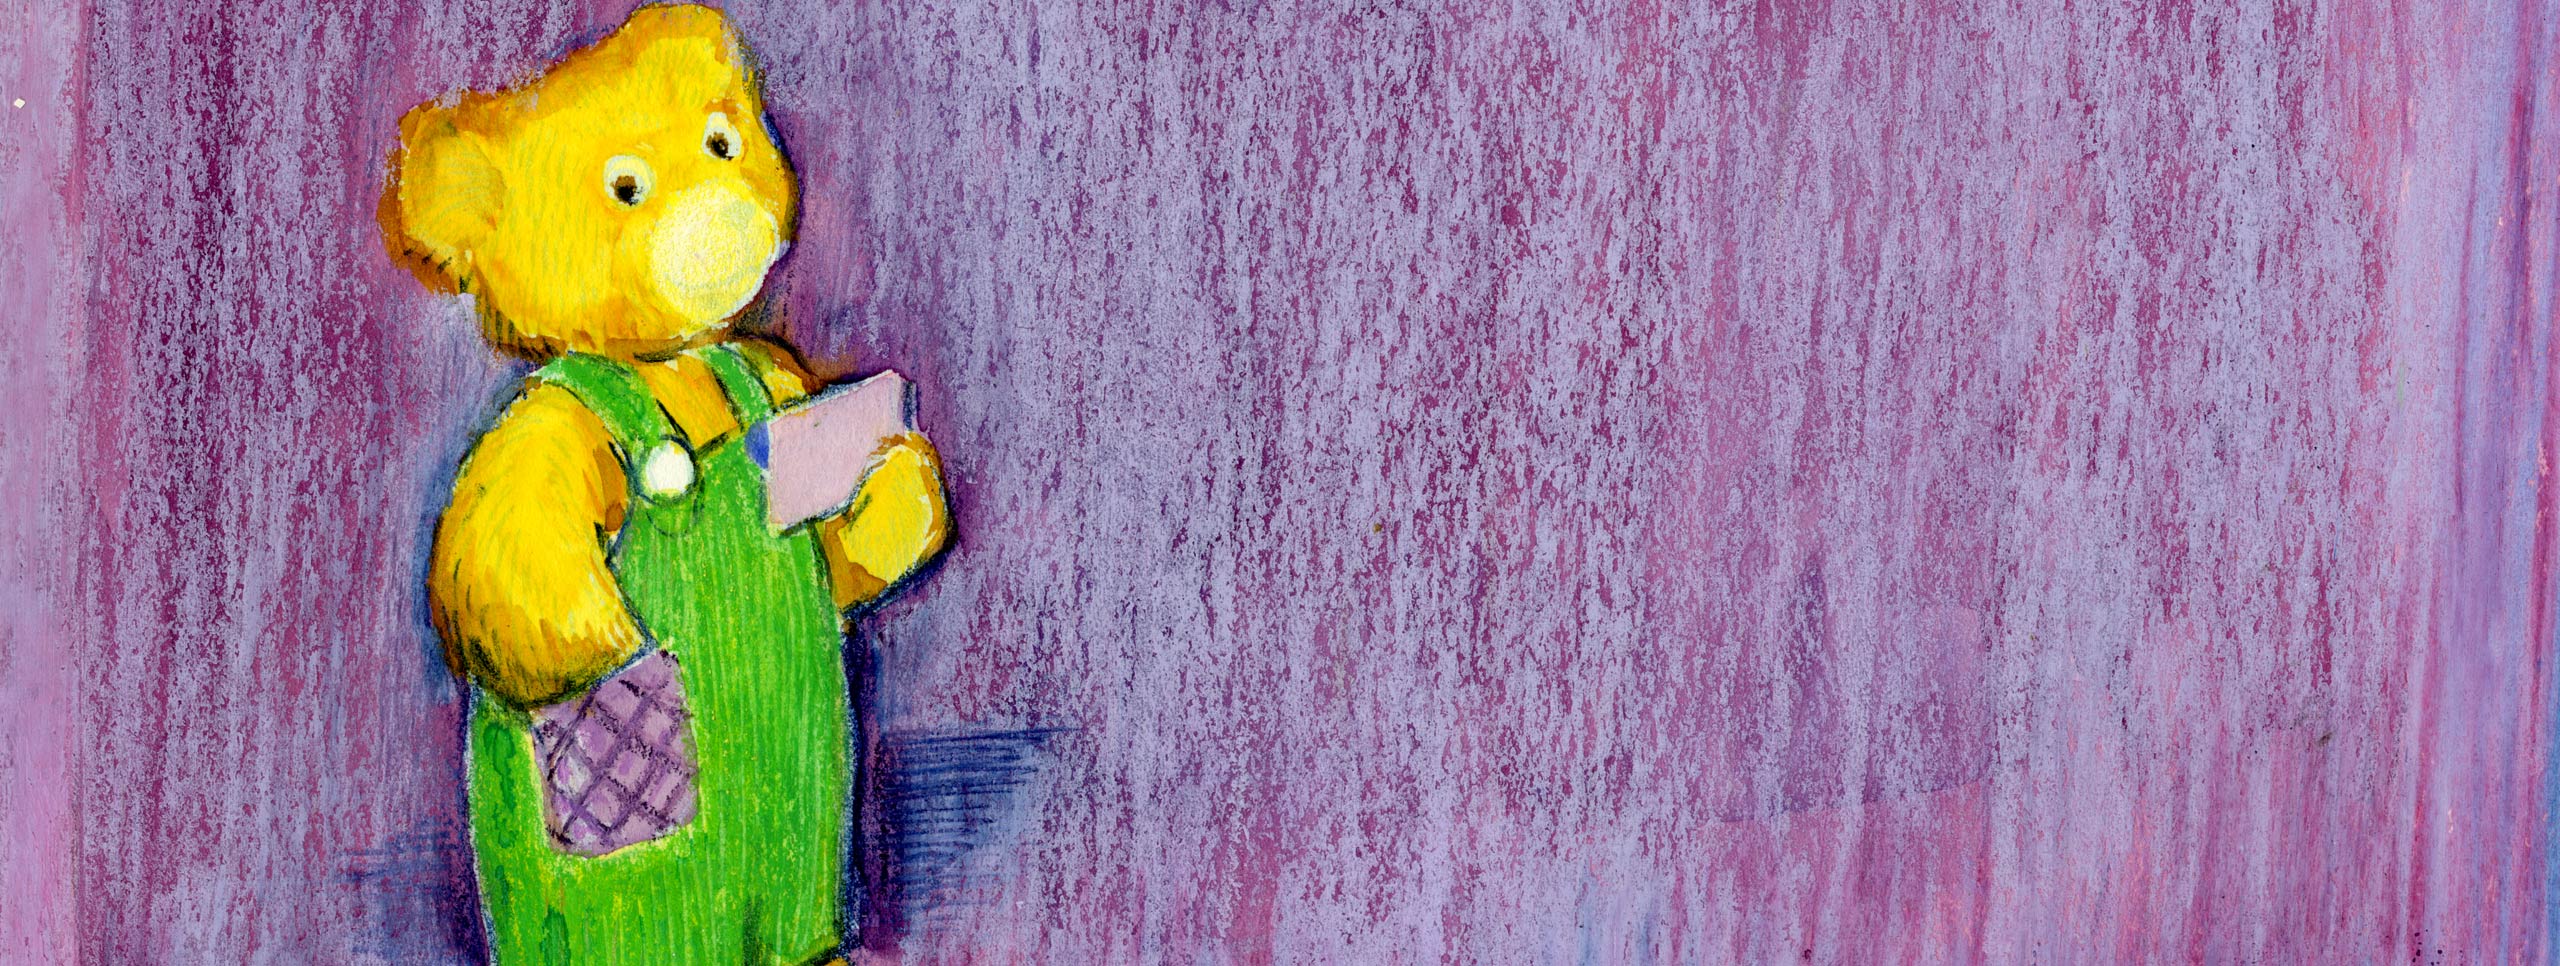 金のテディベアと紫色の背景。 クマは紫色のポケットのある緑のオーバーオールを着ており、ノートカードを持っています